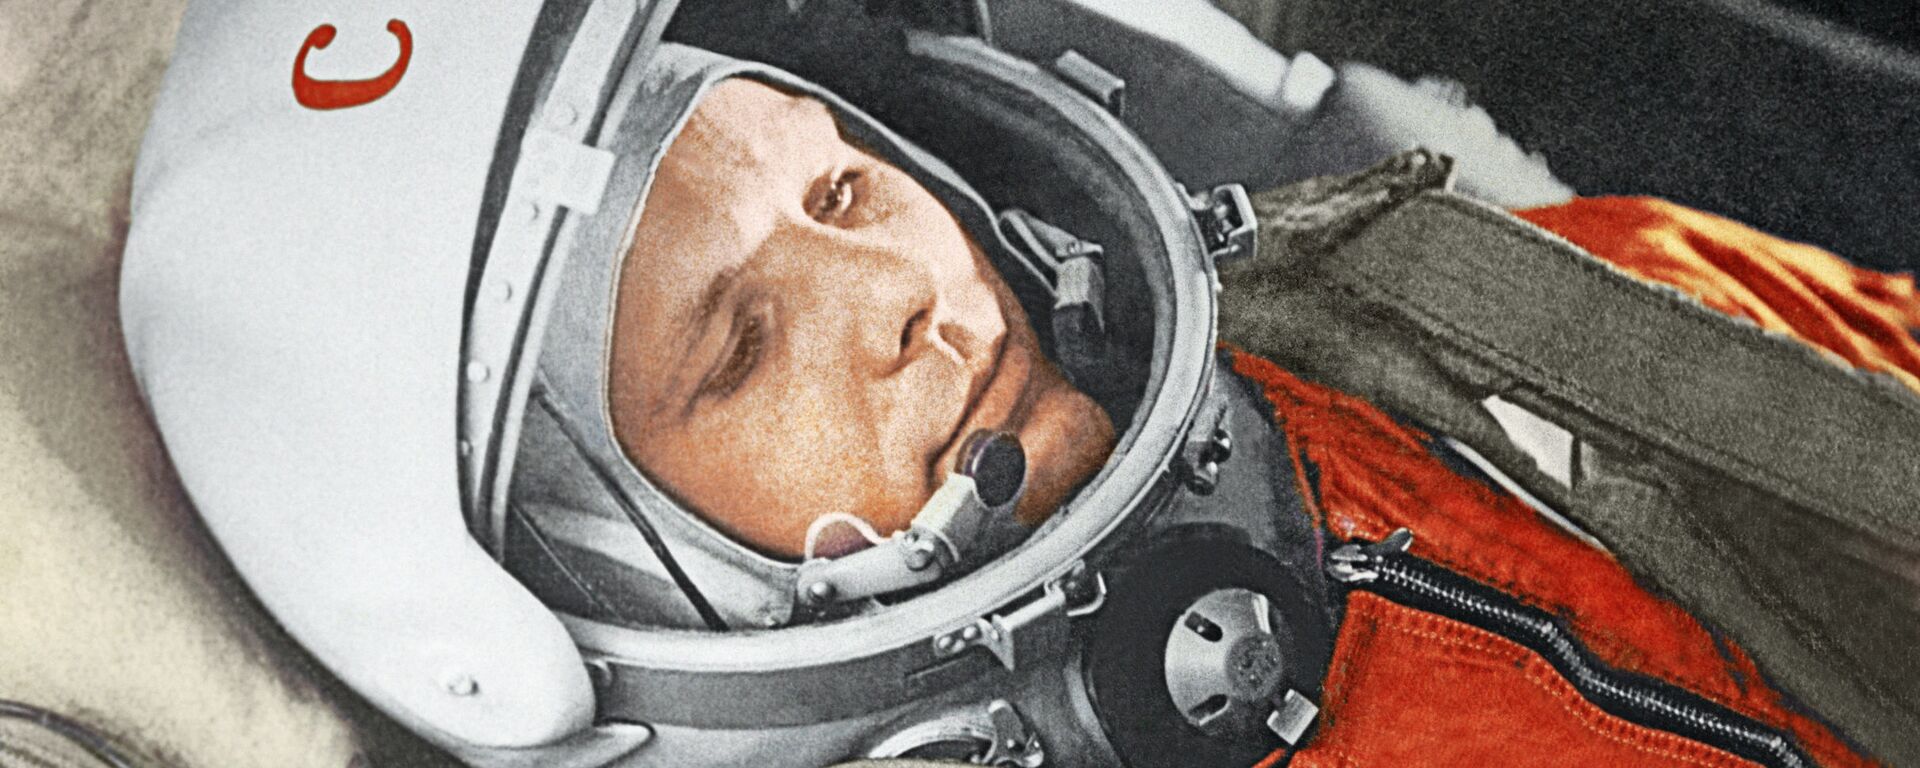 Космонавт Юрий Гагарин в кабине космического корабля Восток-1 перед стартом. Космодром Байконур, 12 апреля 1961 год. - Sputnik Абхазия, 1920, 12.04.2021